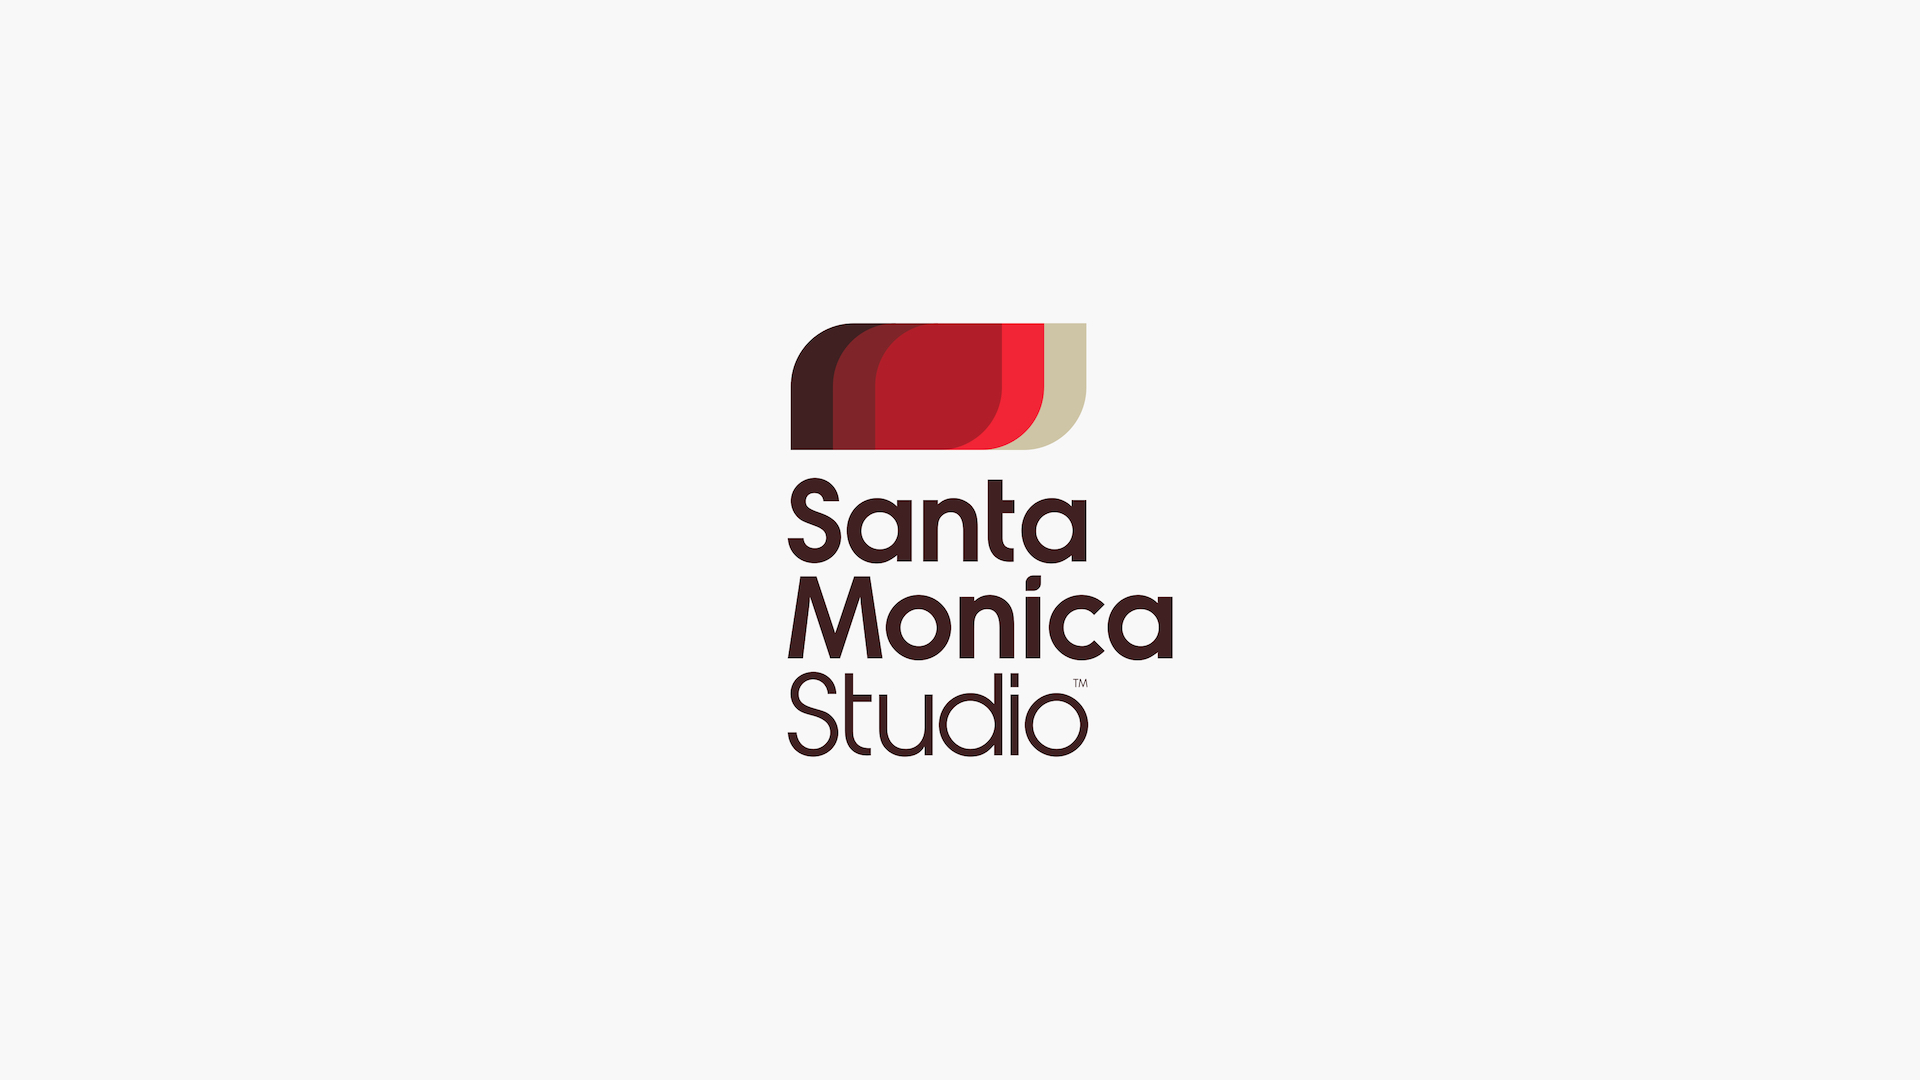 استودیو Santa Monica عنوانی جدید می سازد